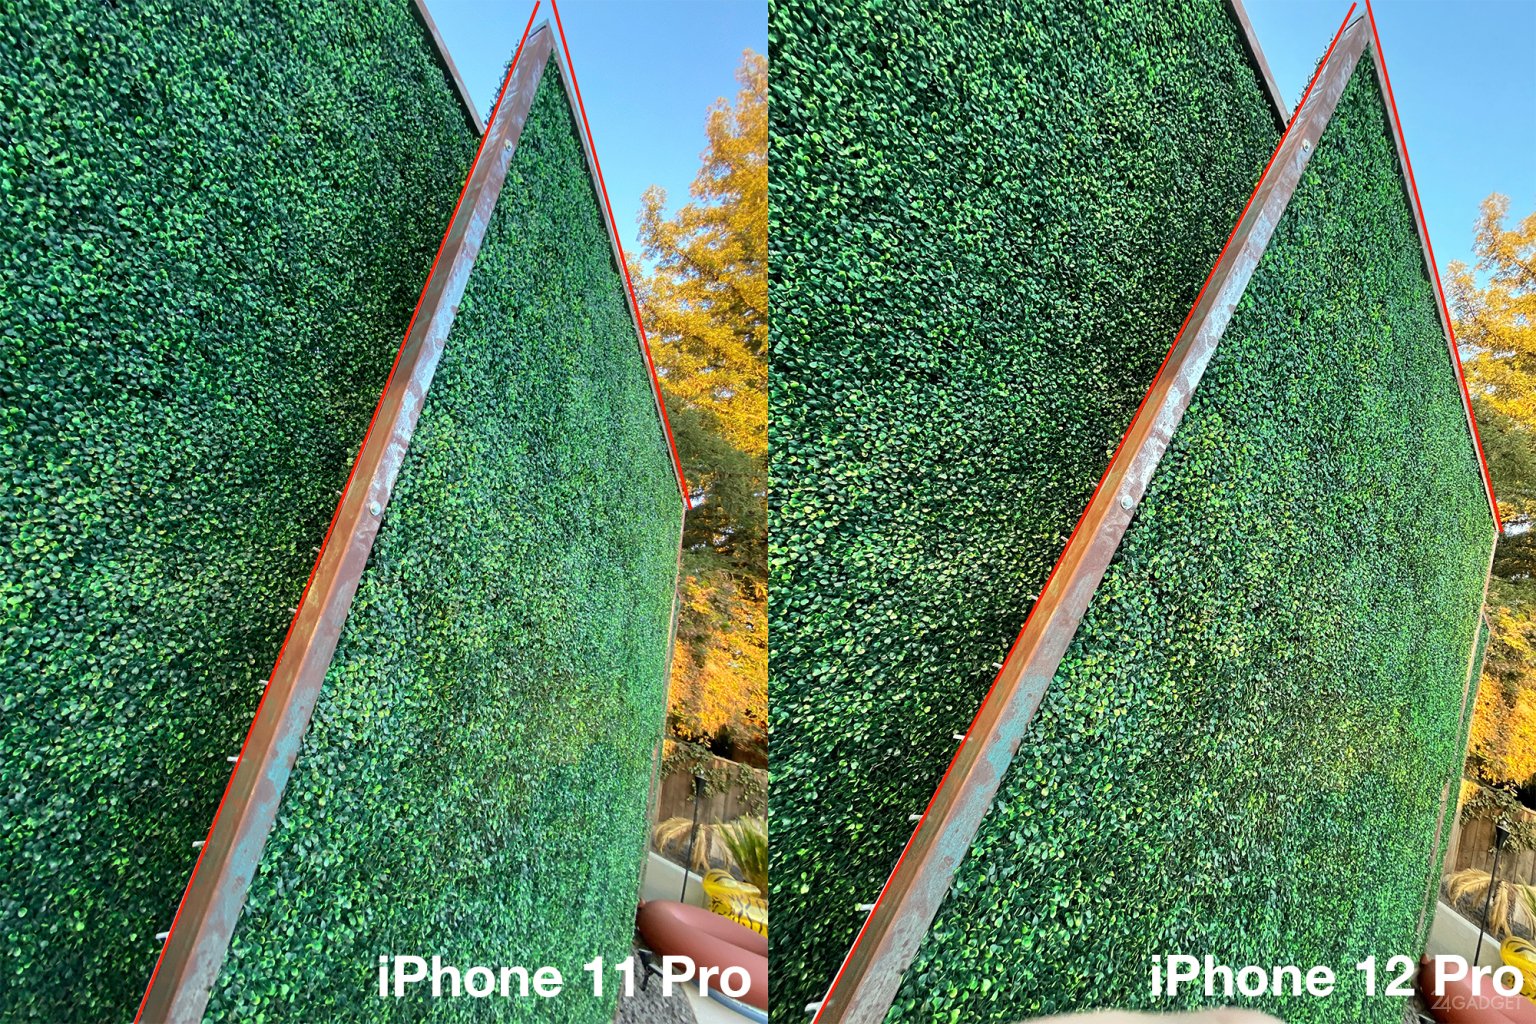 Сравнение Фото Iphone 12 И 12 Pro